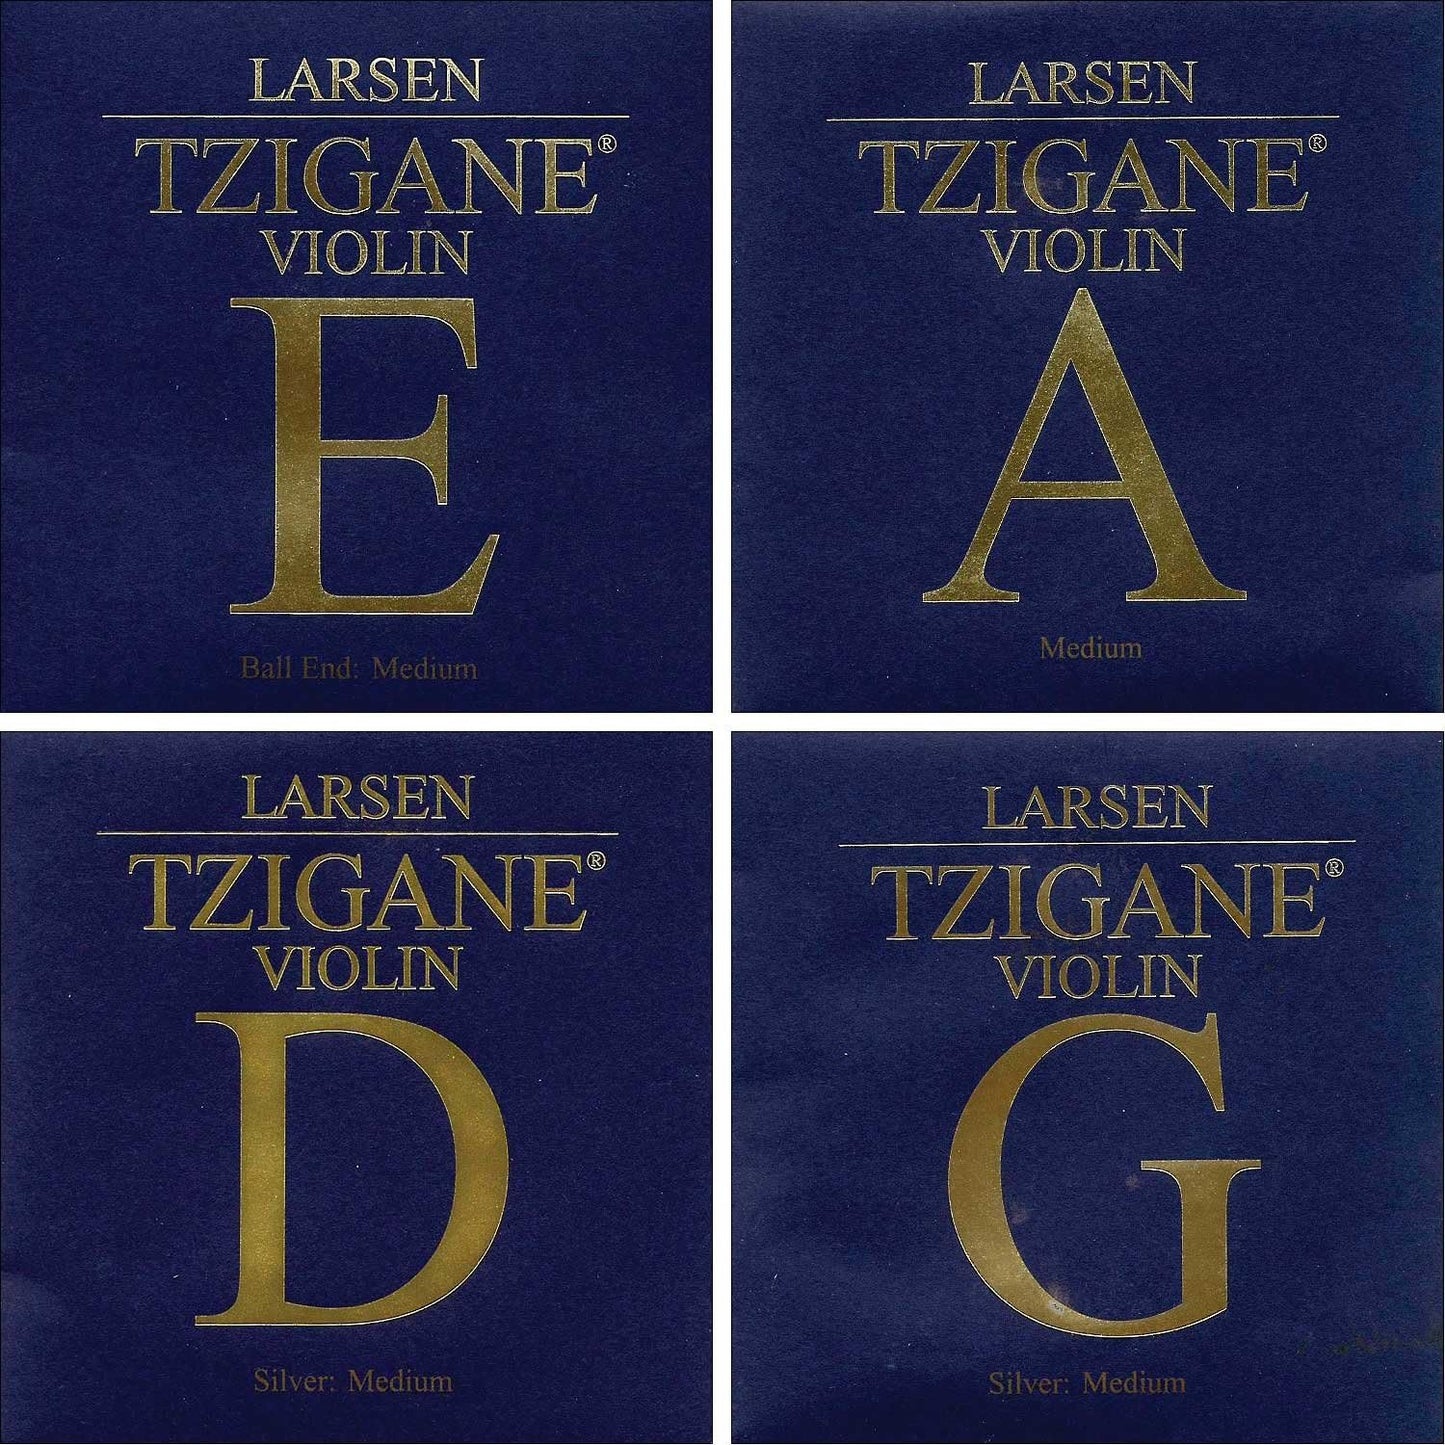 Larsen Tzigane Violin String Set- Medium (ball end)